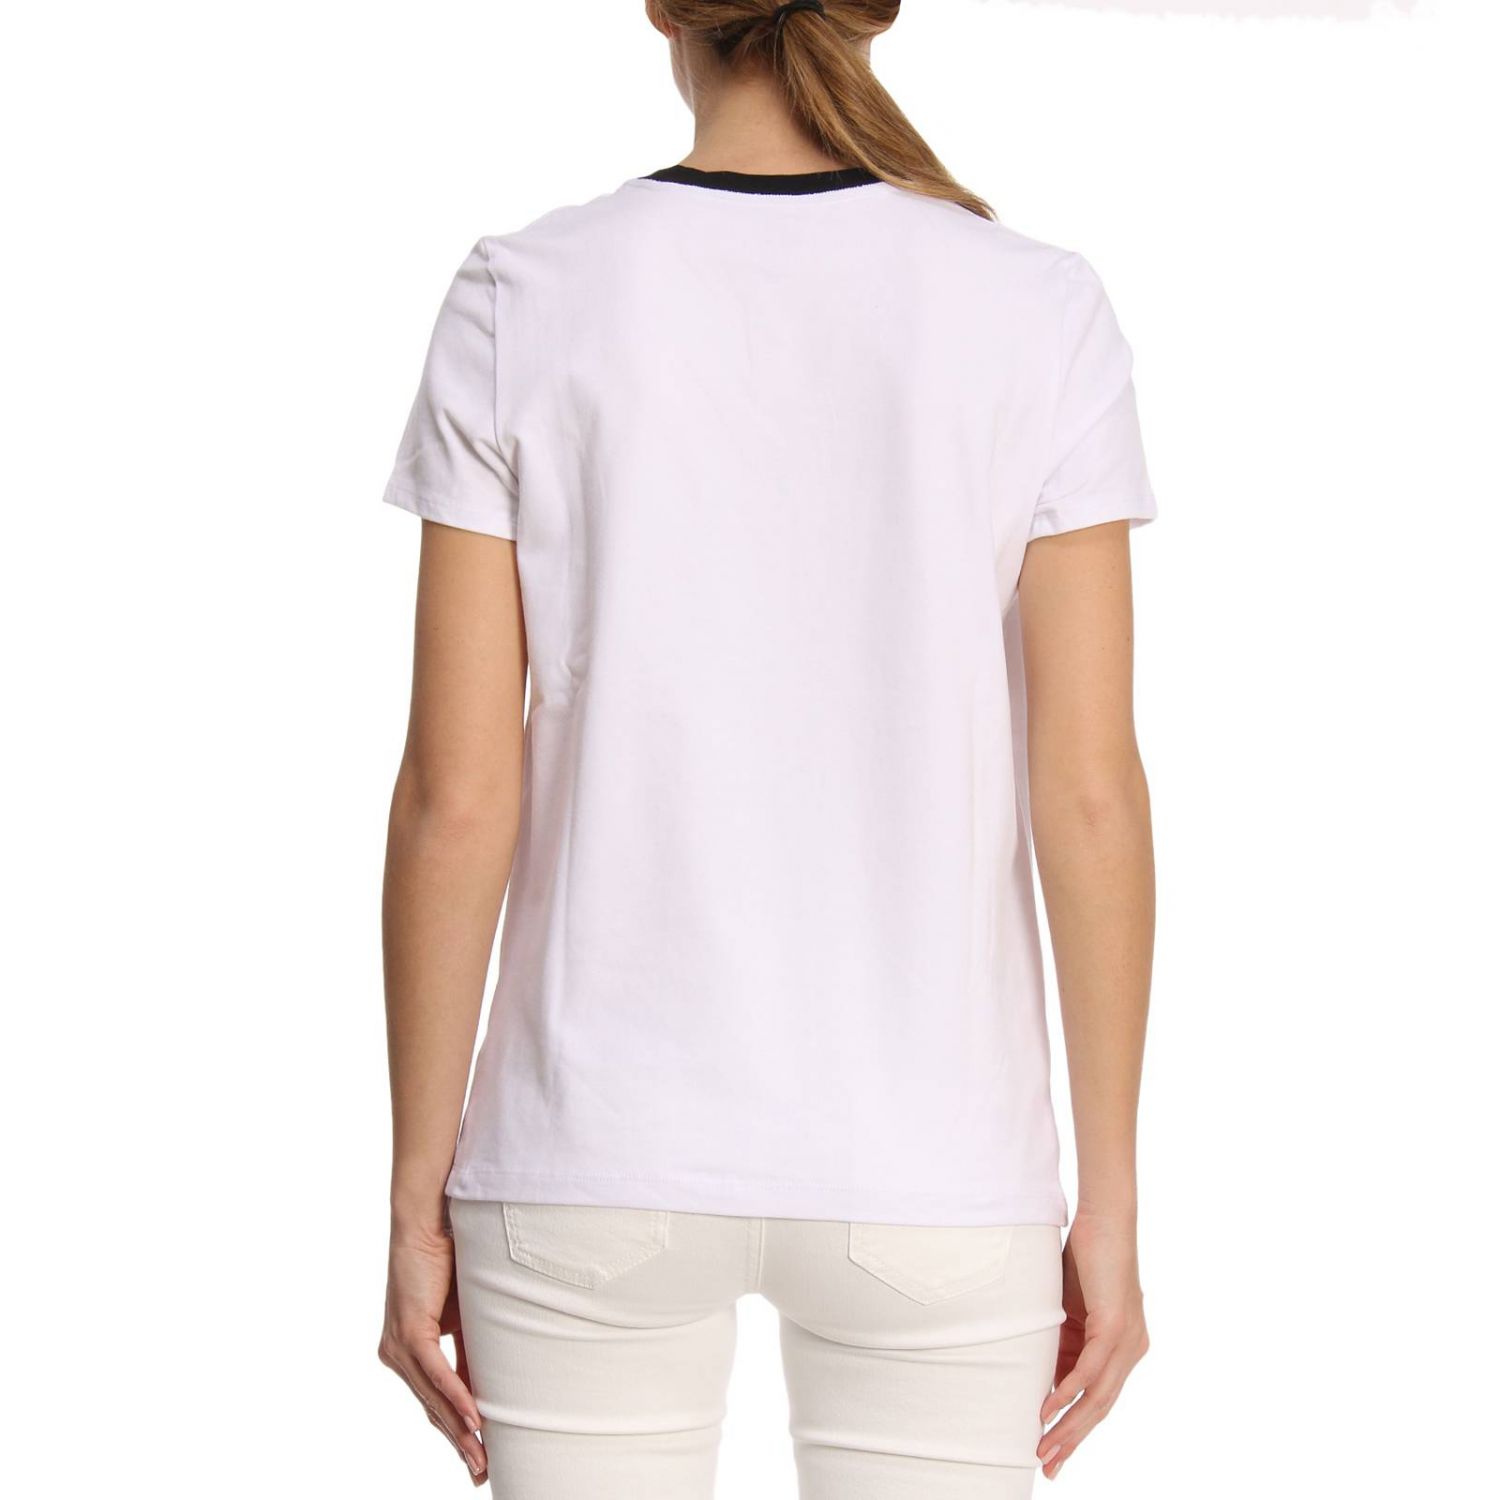 Tory Burch Outlet: T-shirt women | T-Shirt Tory Burch Women White | T ...